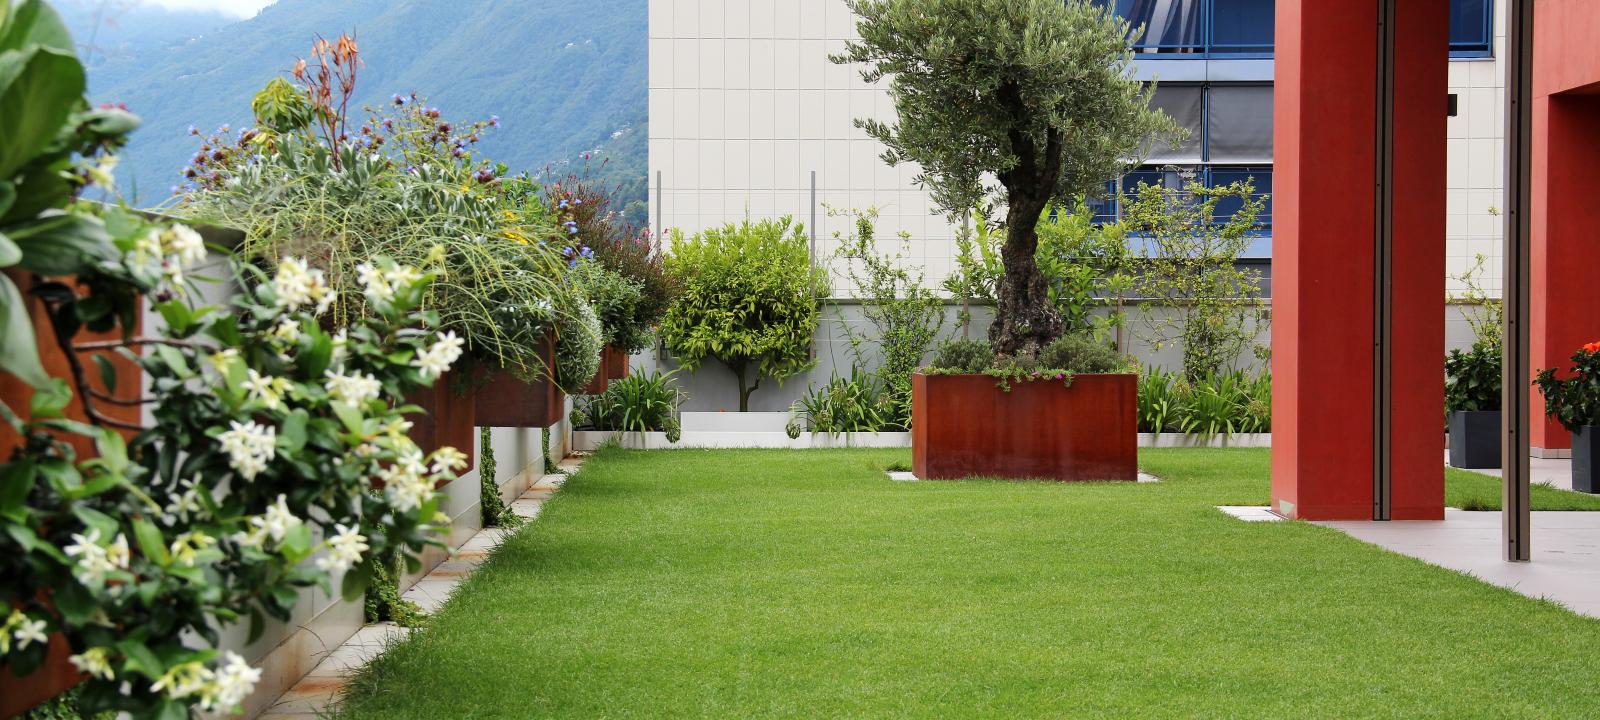 Dachgarten mit Rasen, Pflanztrog mit einer Olivenbaum und hängenden Blumenkästen